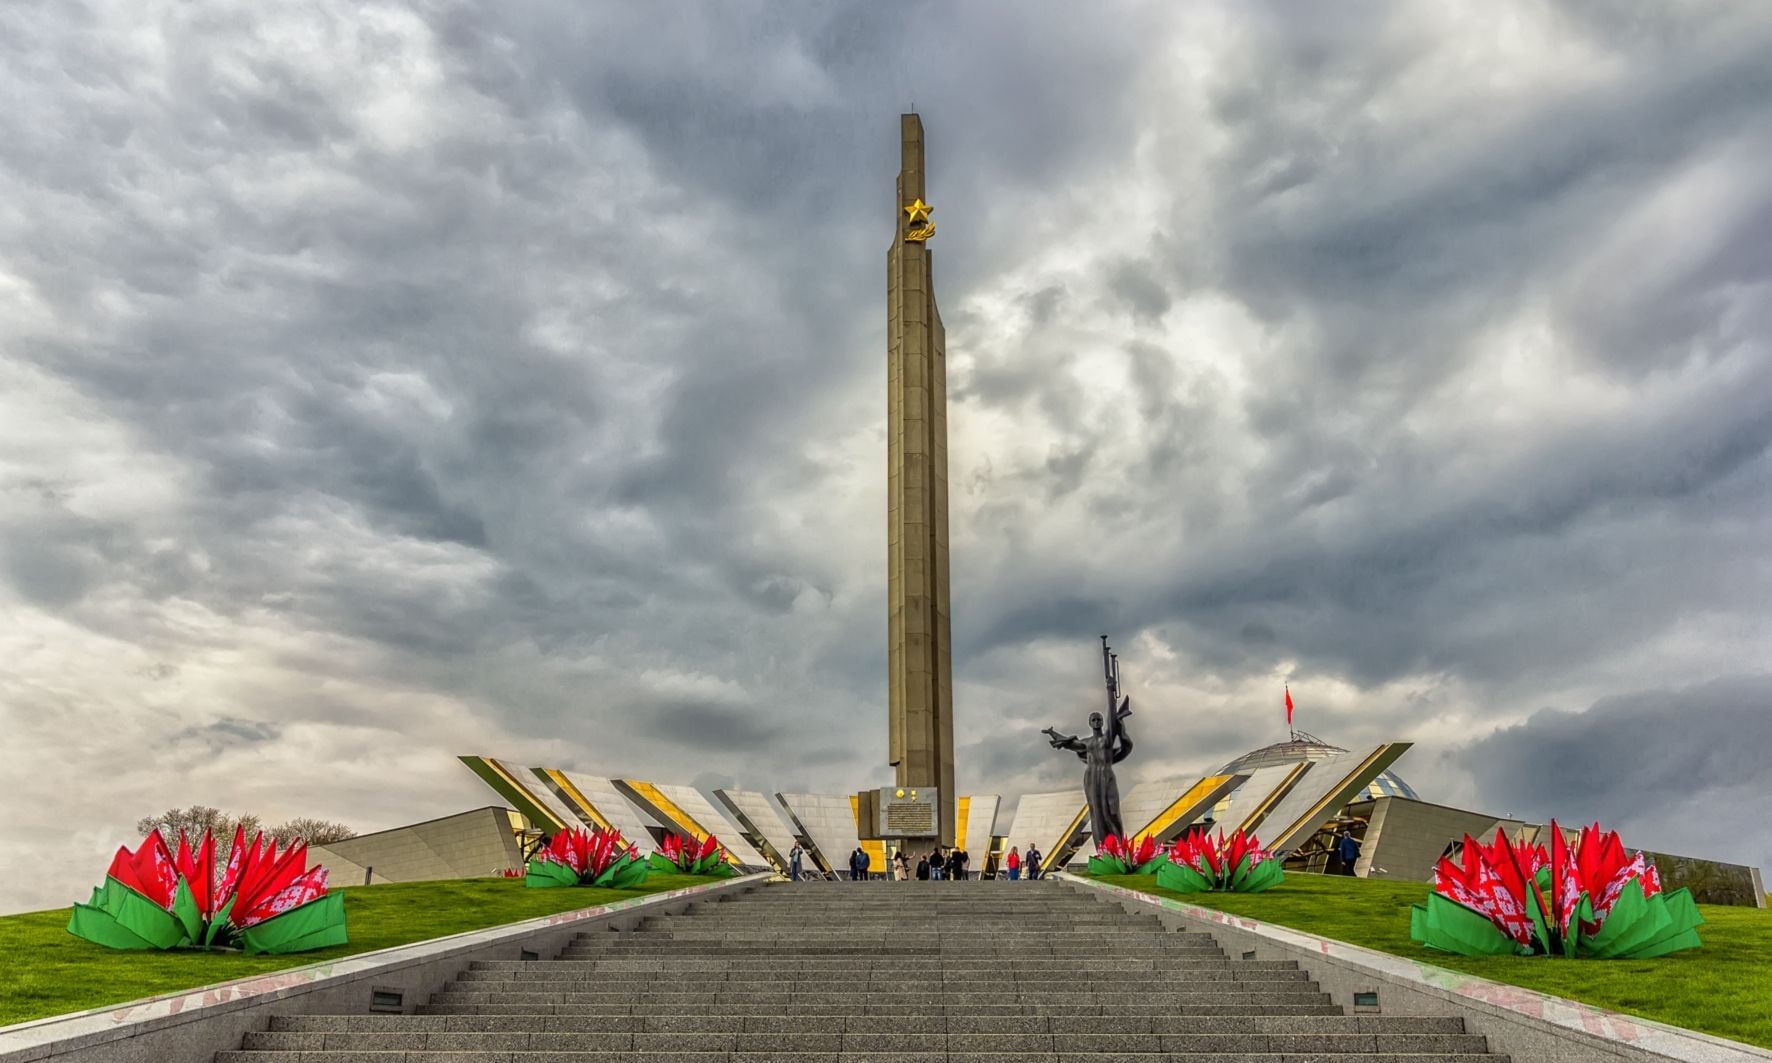 Не предадим забвению: Год исторической памяти в Беларуси